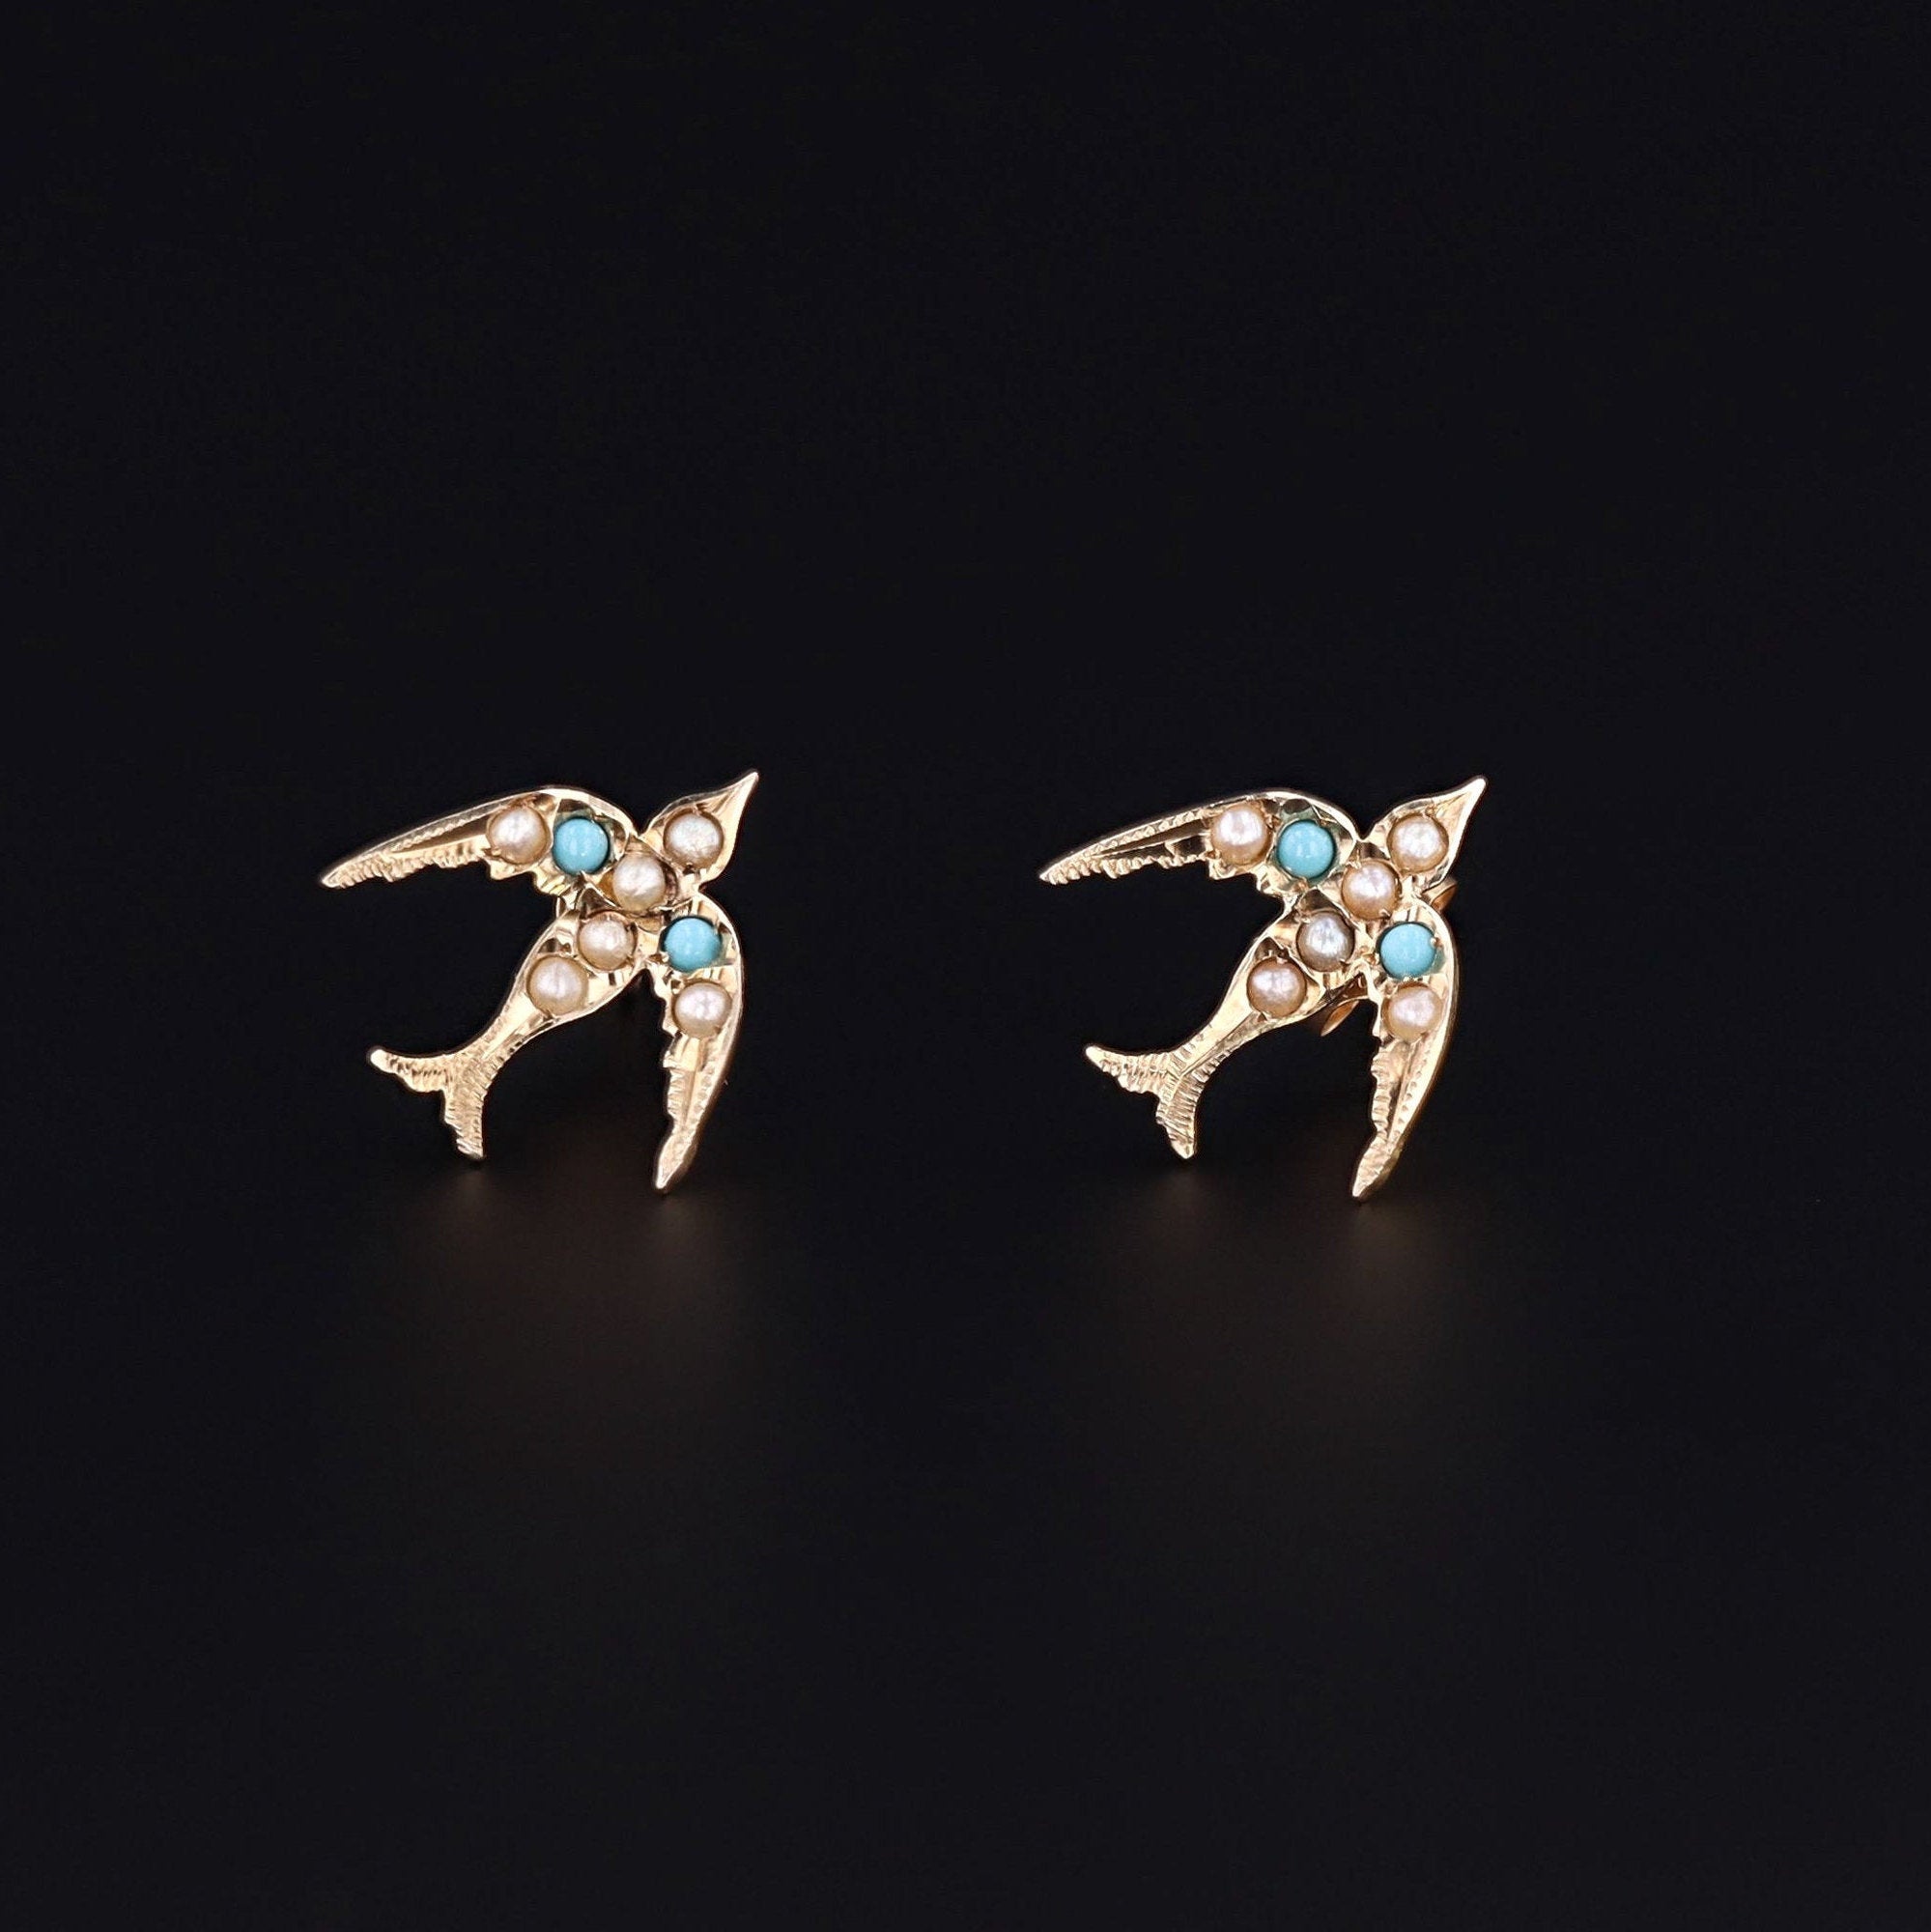 Antique Swallow Earrings | Pin Conversion Earrings | Pearl & Turquoise Glass Bird Earrings | 9ct Birds on 14k Posts | Post Earrings